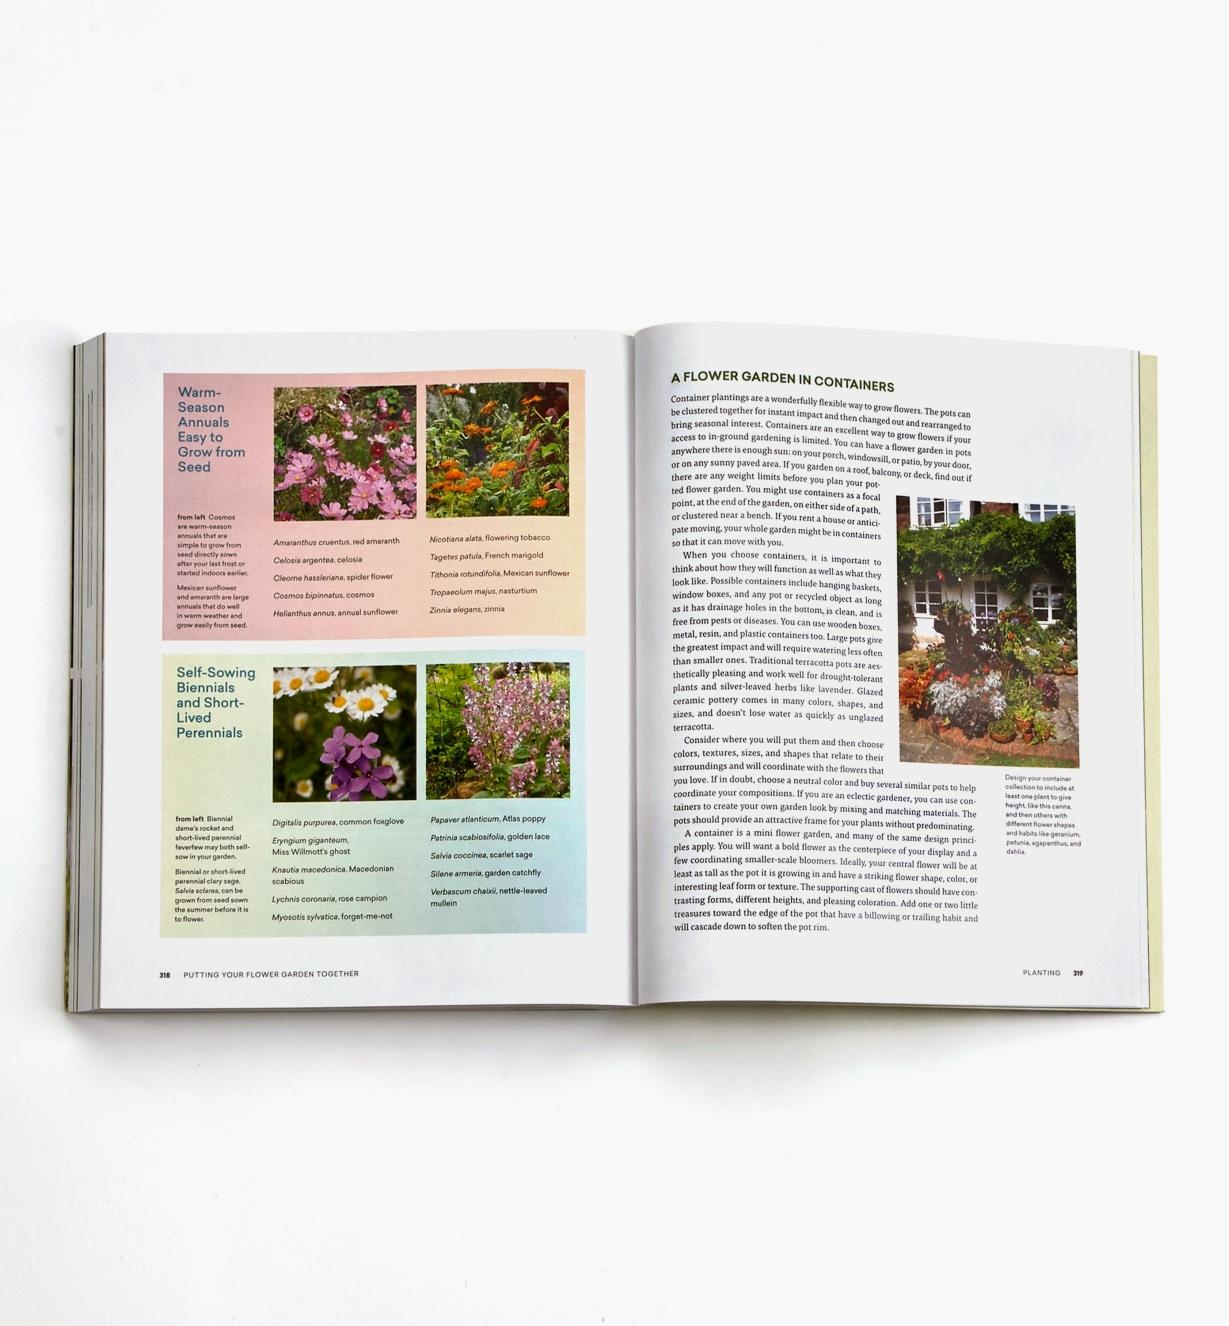 LA980 - The Ultimate Flower Gardener’s Guide